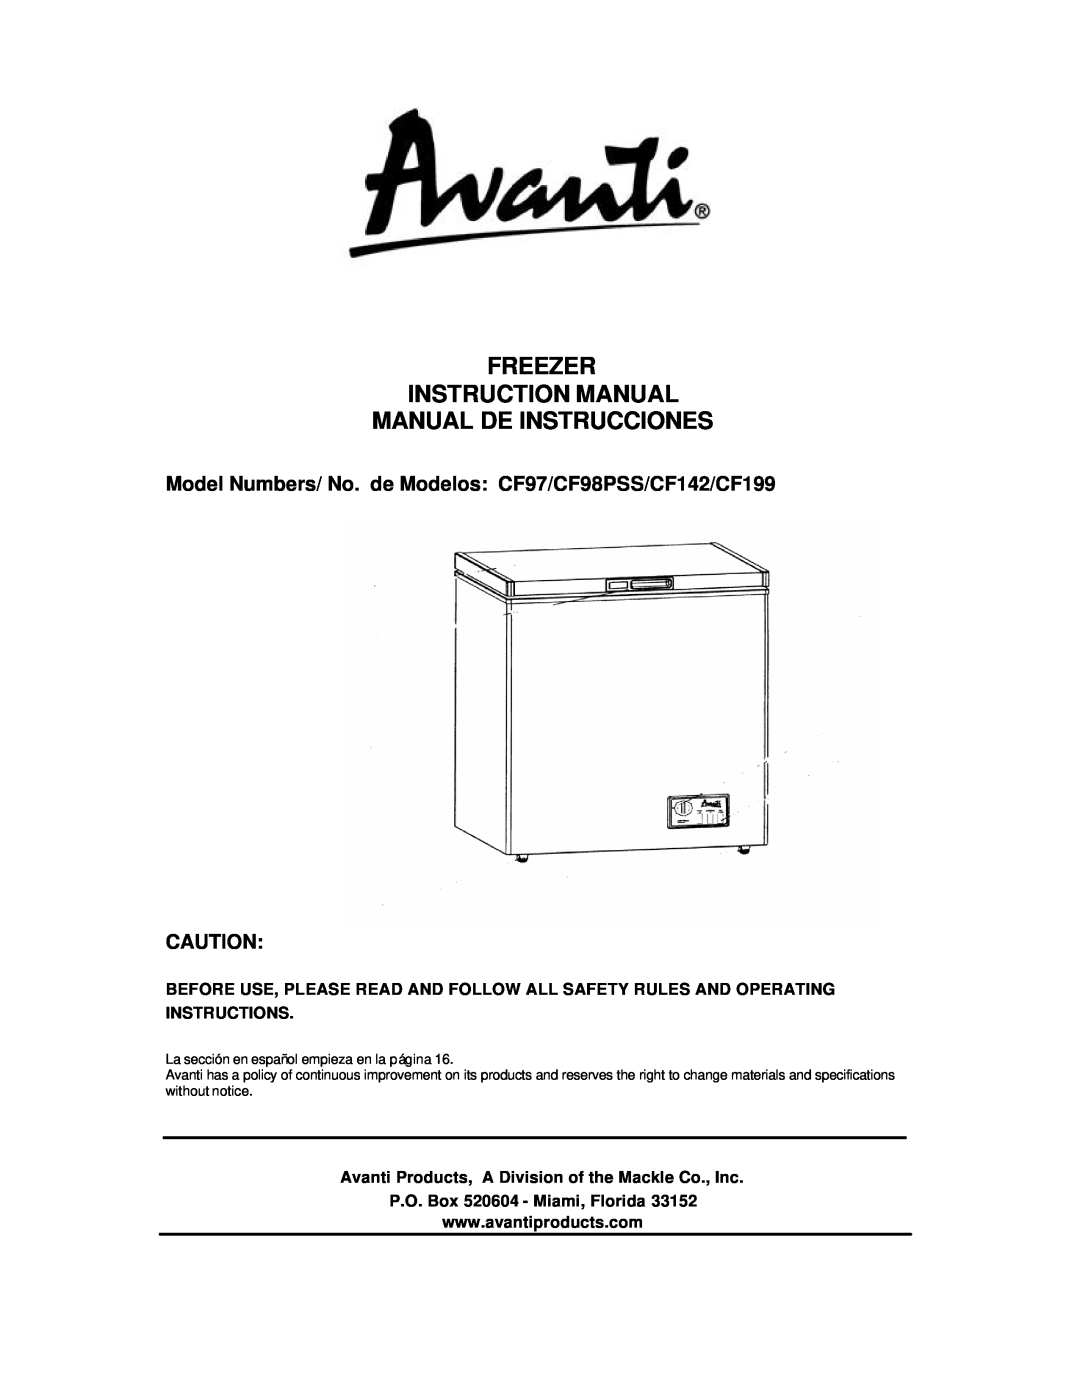 Avanti CF98PSS instruction manual Manual De Instrucciones, P.O. Box 520604 - Miami, Florida 